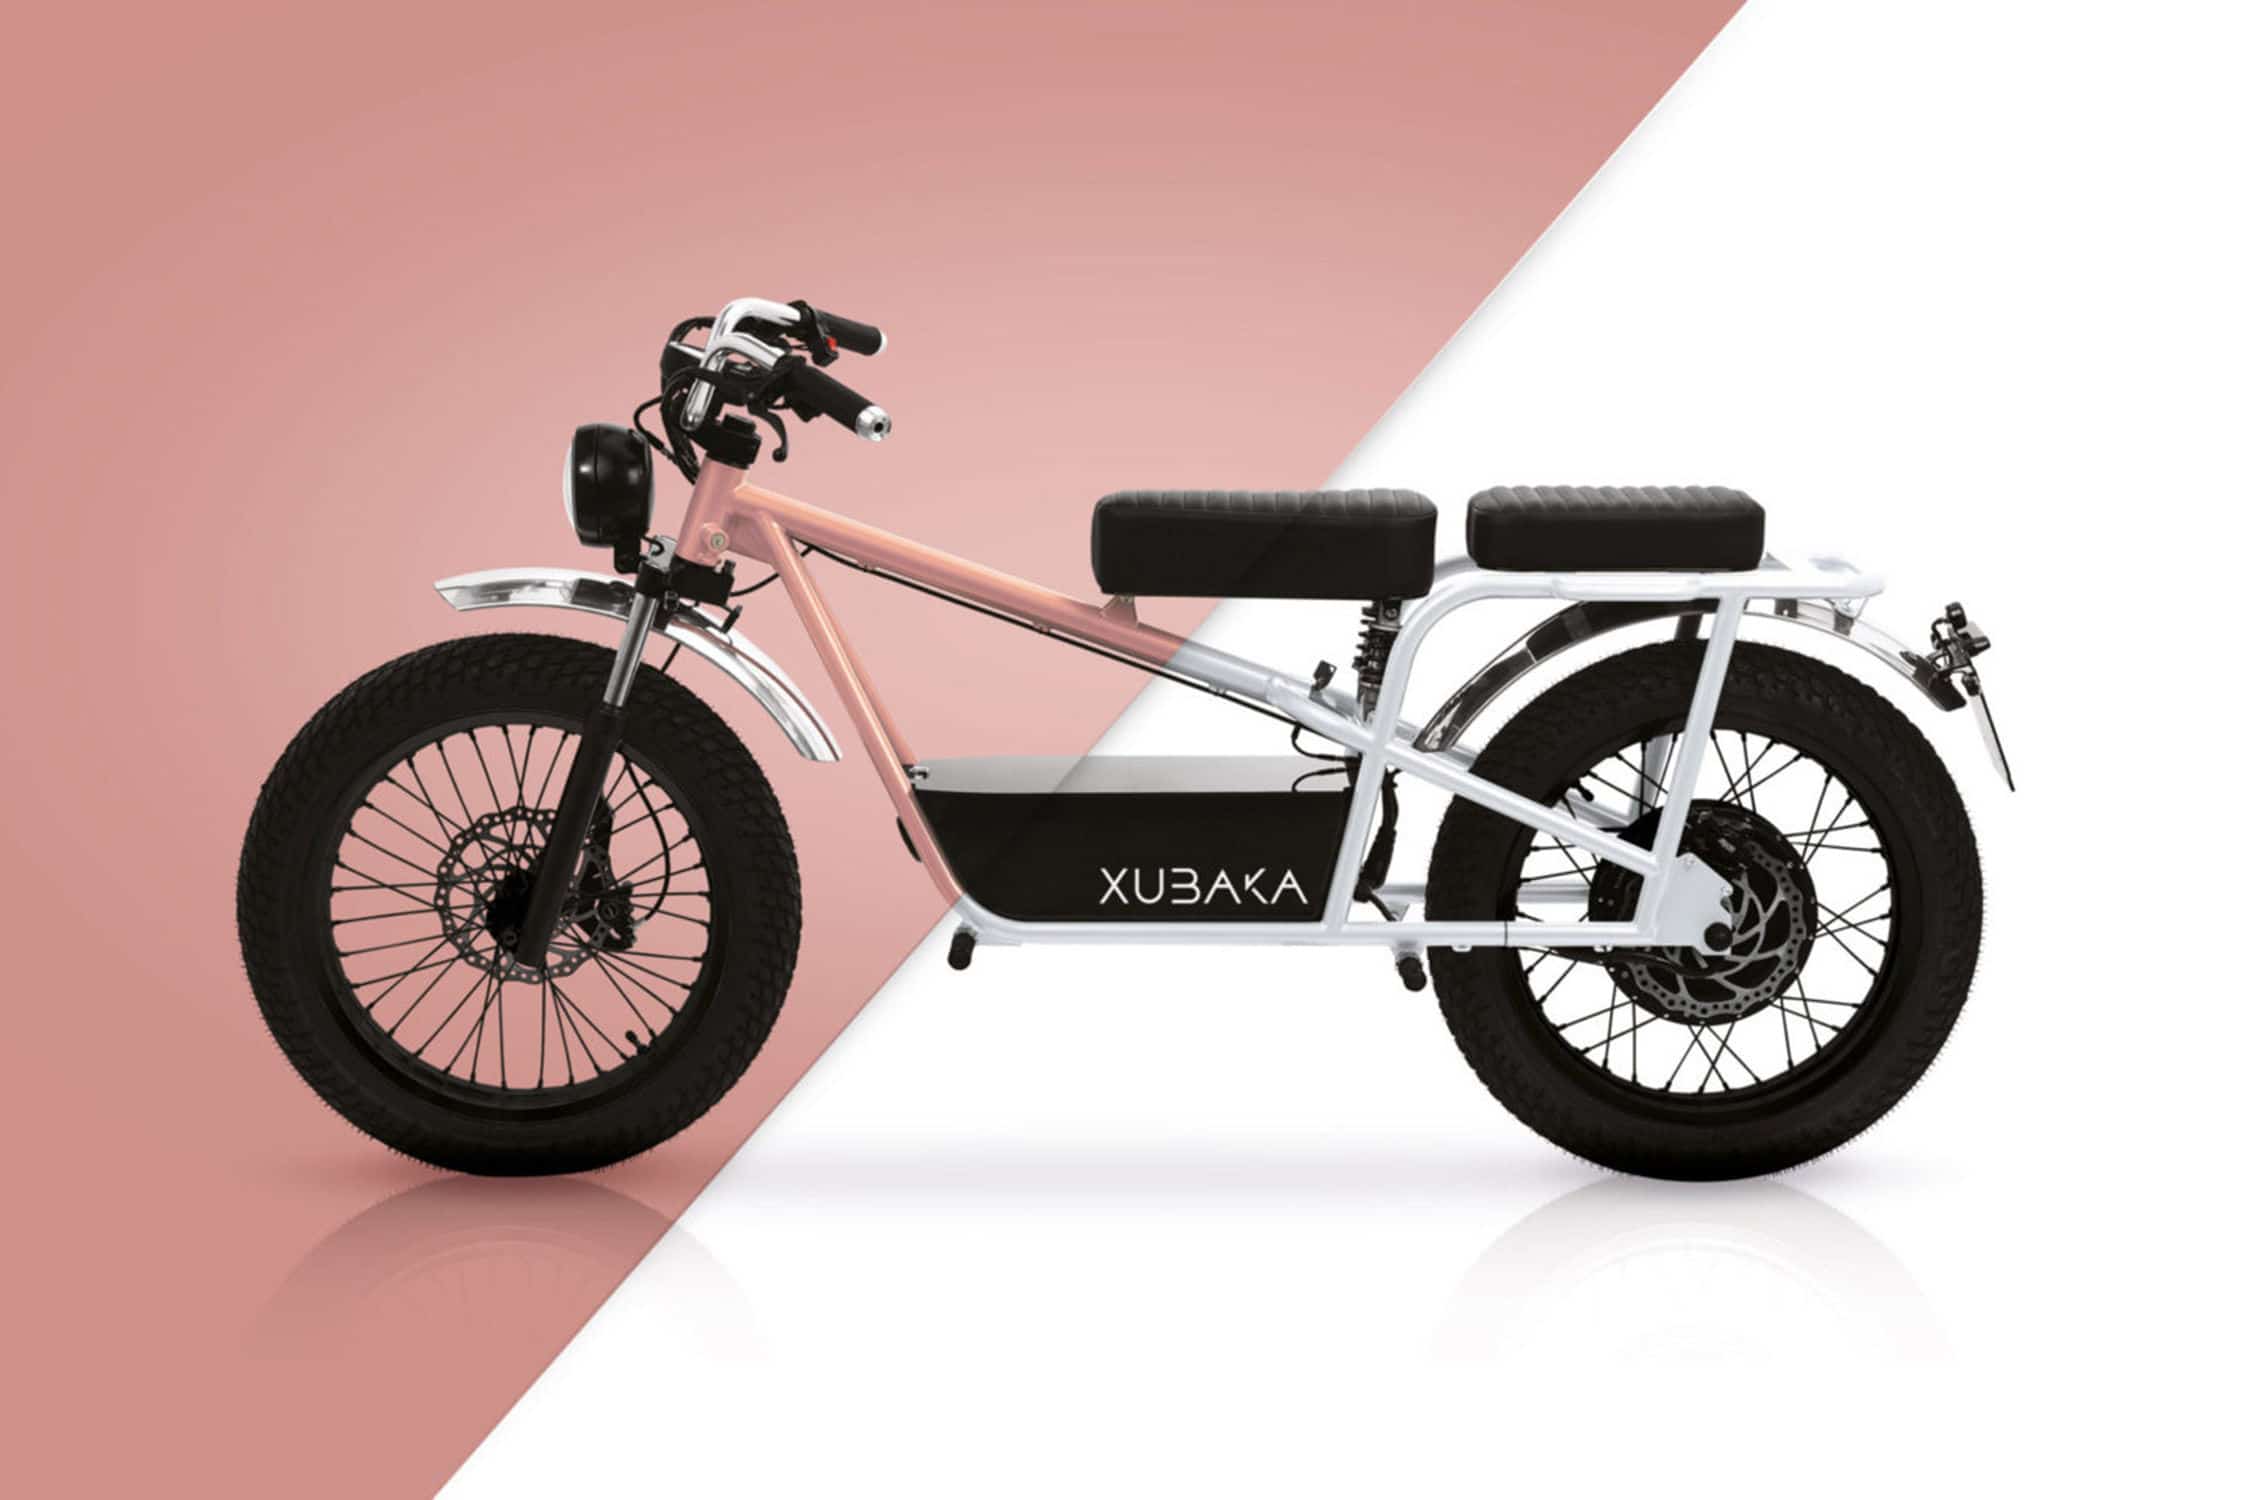 xubaka-une-petite-moto-electrique-francaise-dans-les-allees-du-ces-24096-1.jpg